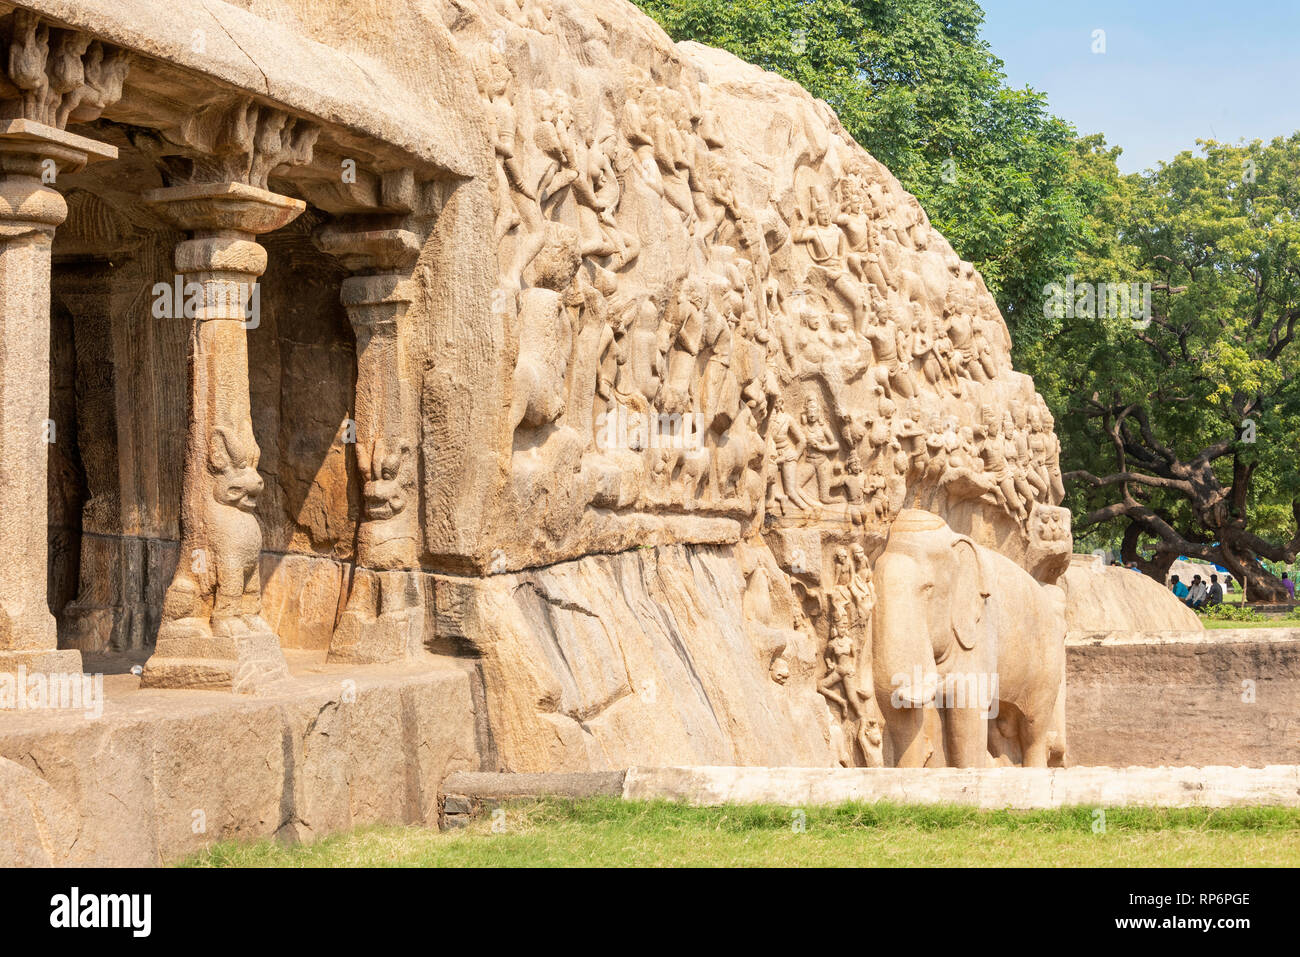 Abstieg des Ganges ist ein Denkmal an Mamallapuram. Messung von 29 m × 13 m, es ist eine riesige Open-Air-rock Relief auf zwei monolithischen Felsen Felsen geschnitzt. Stockfoto